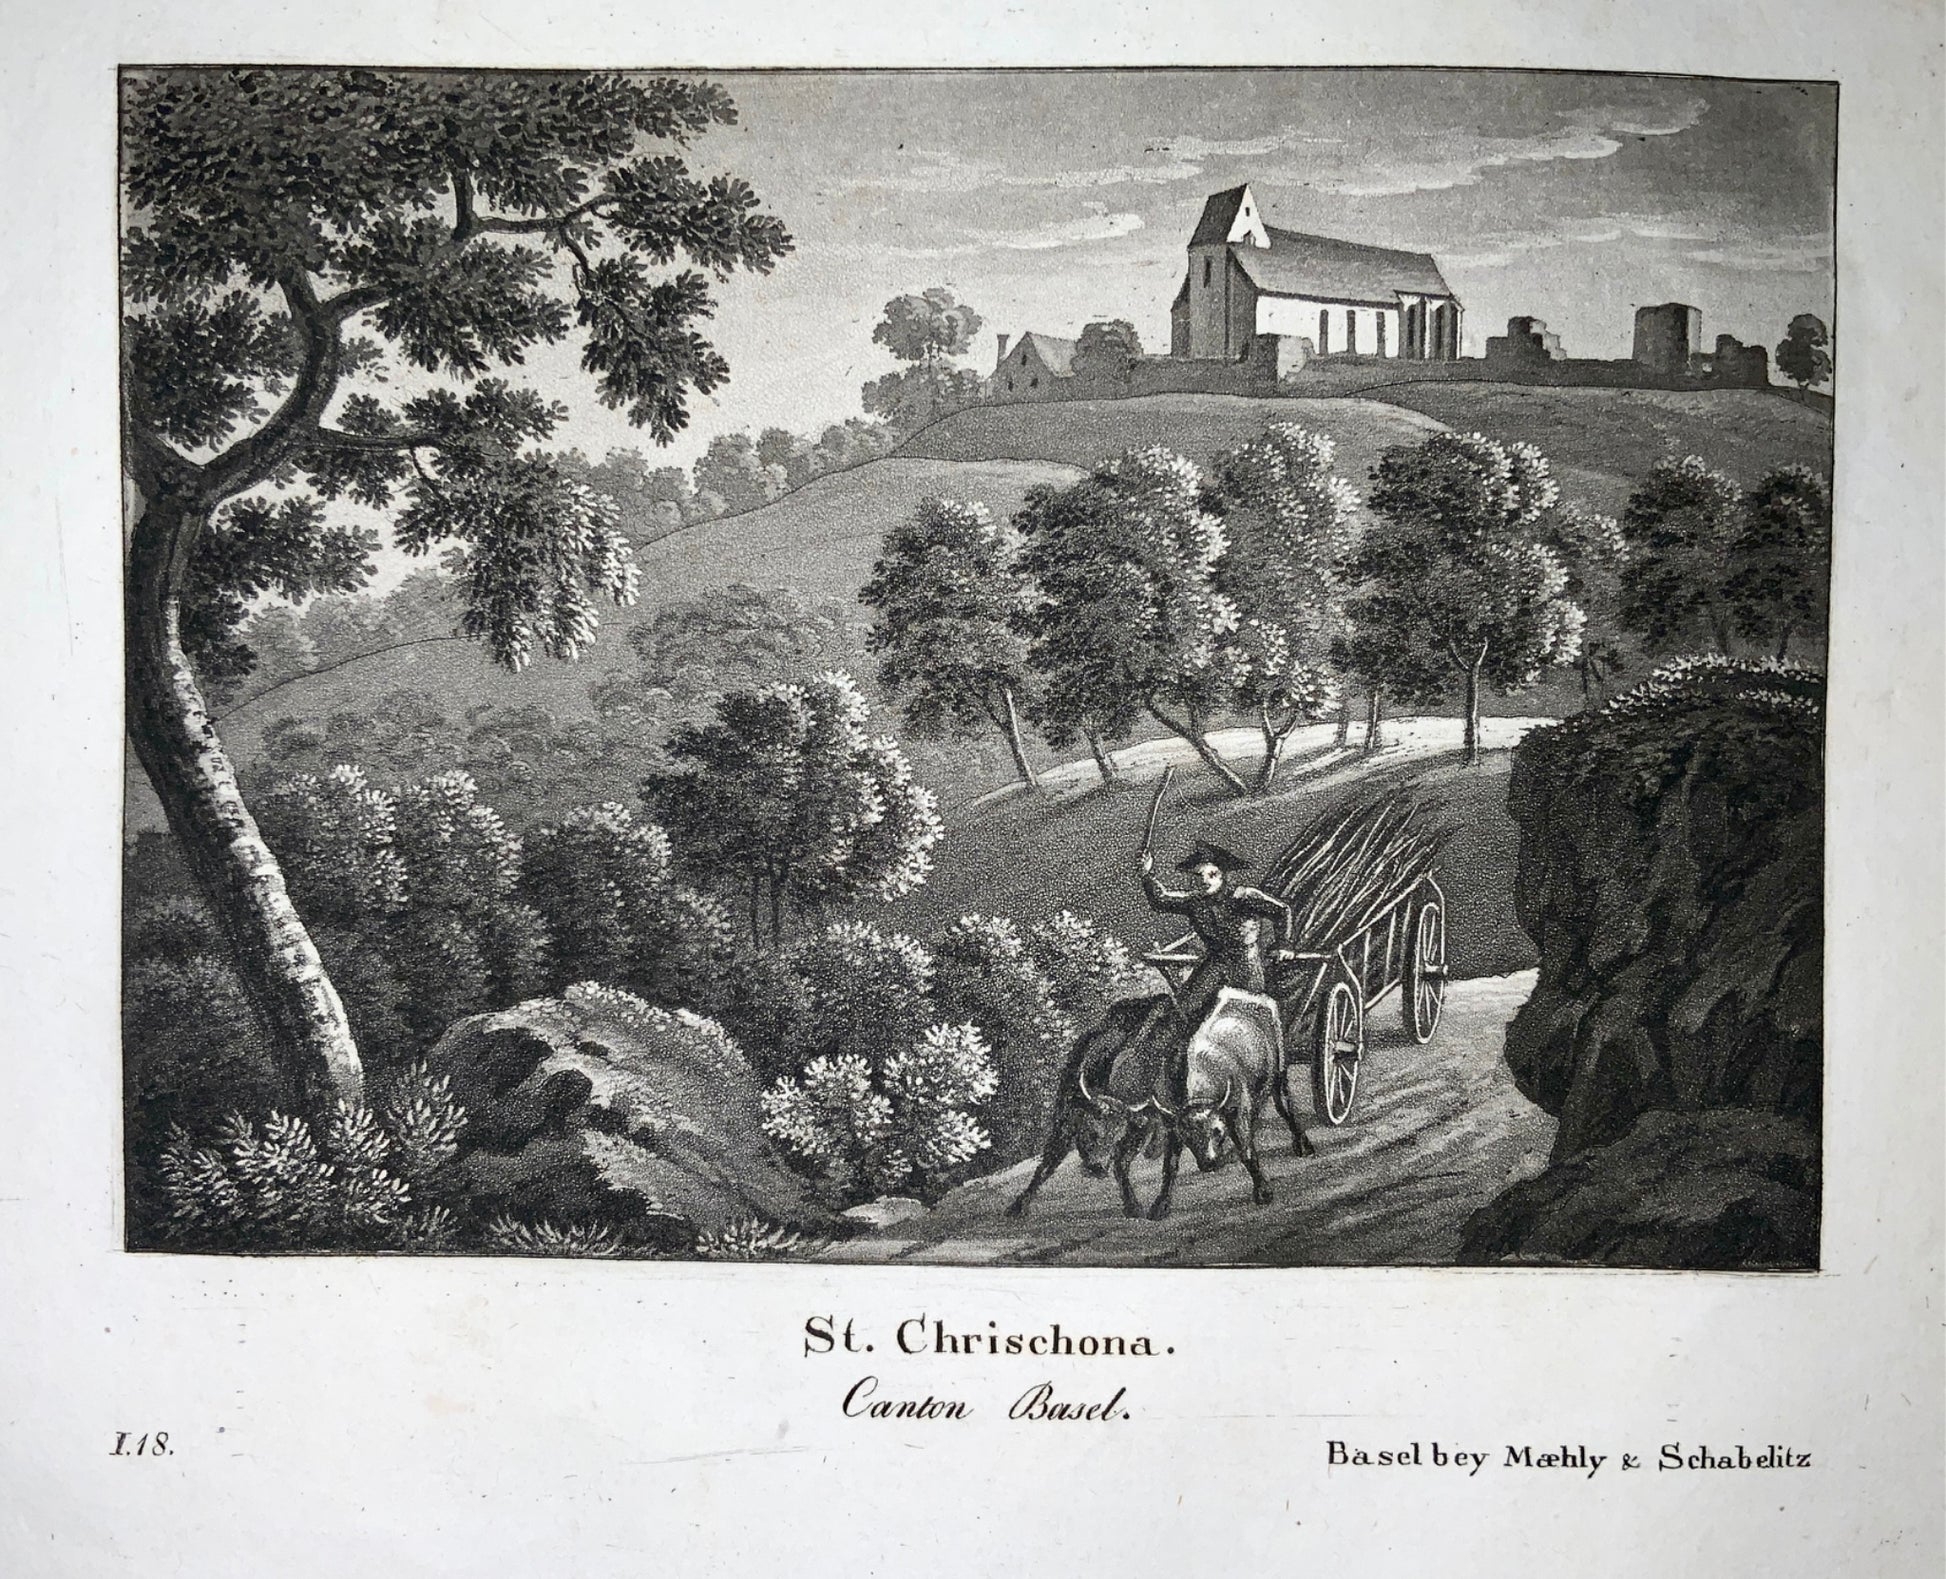 1830 c. Maehly & Schablitz - St. Chrischona Basel - Aquatint - Switzerland